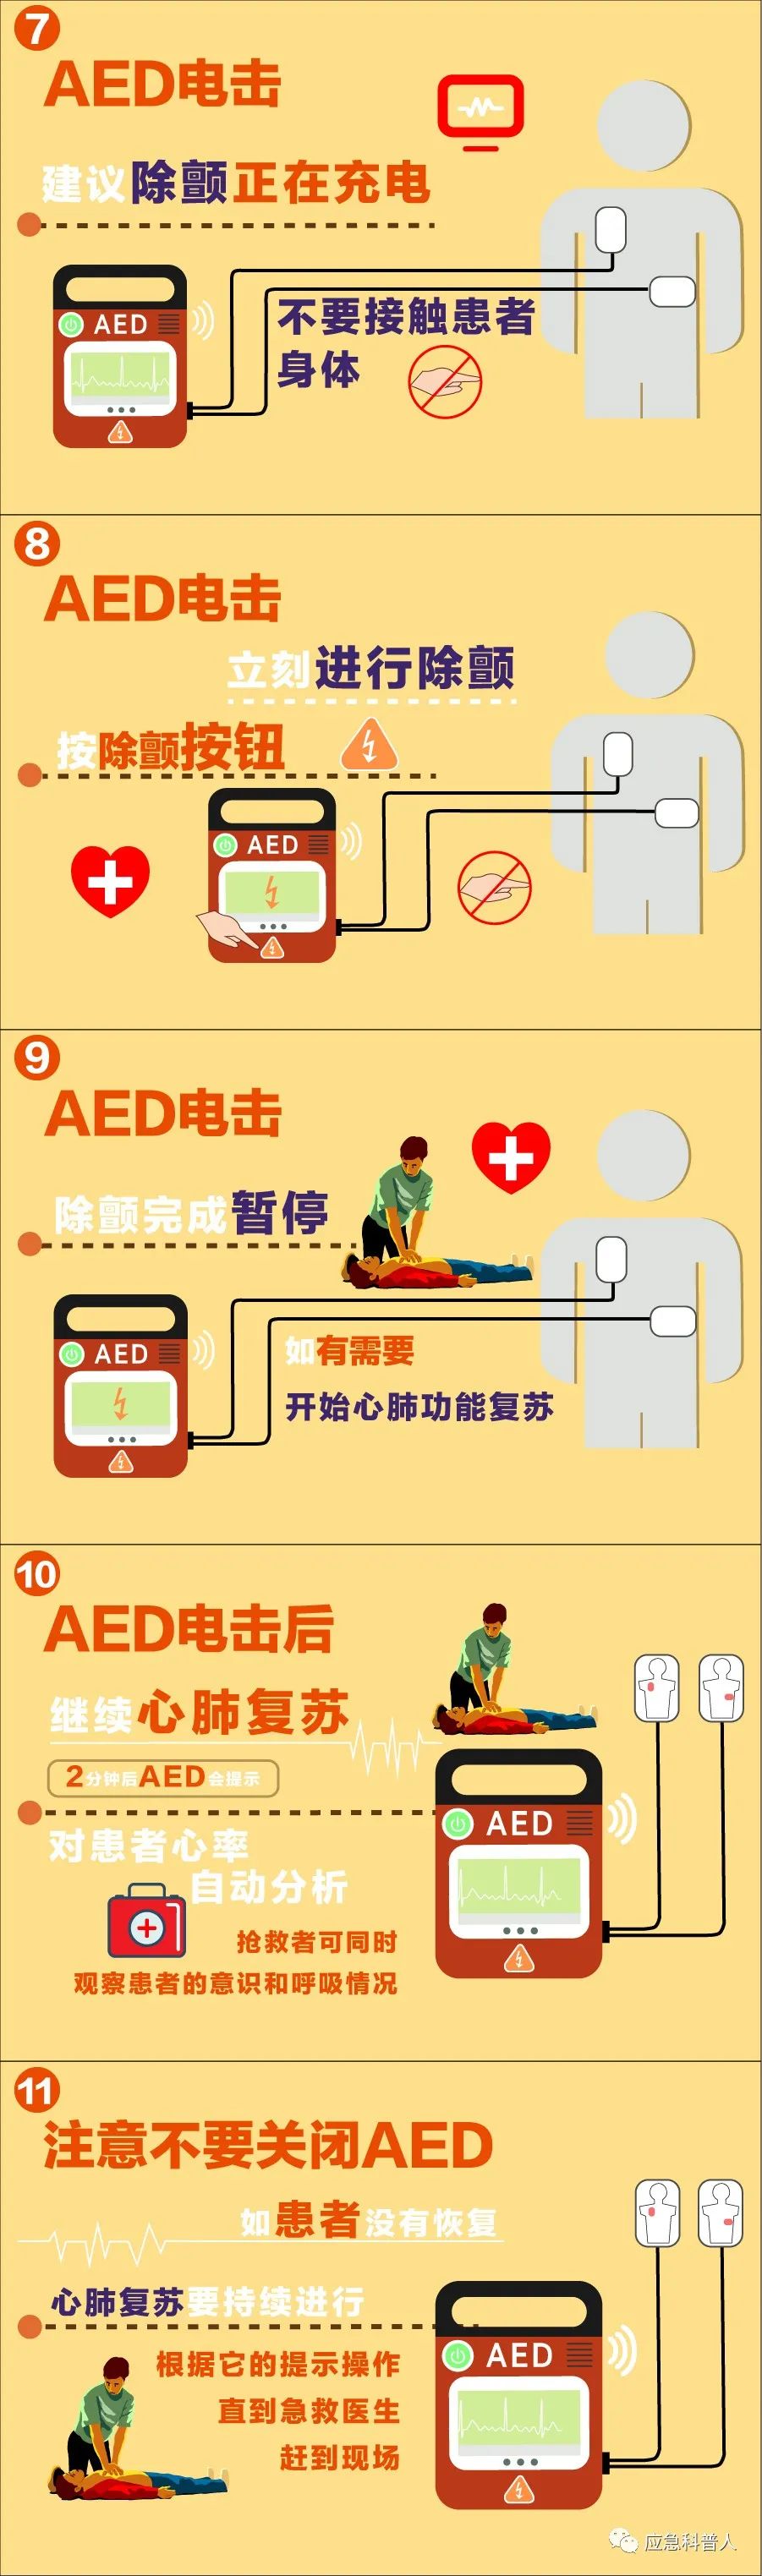 aed全称为自动体外除颤器,是一种可被非专业人士使用的用于抢救心脏